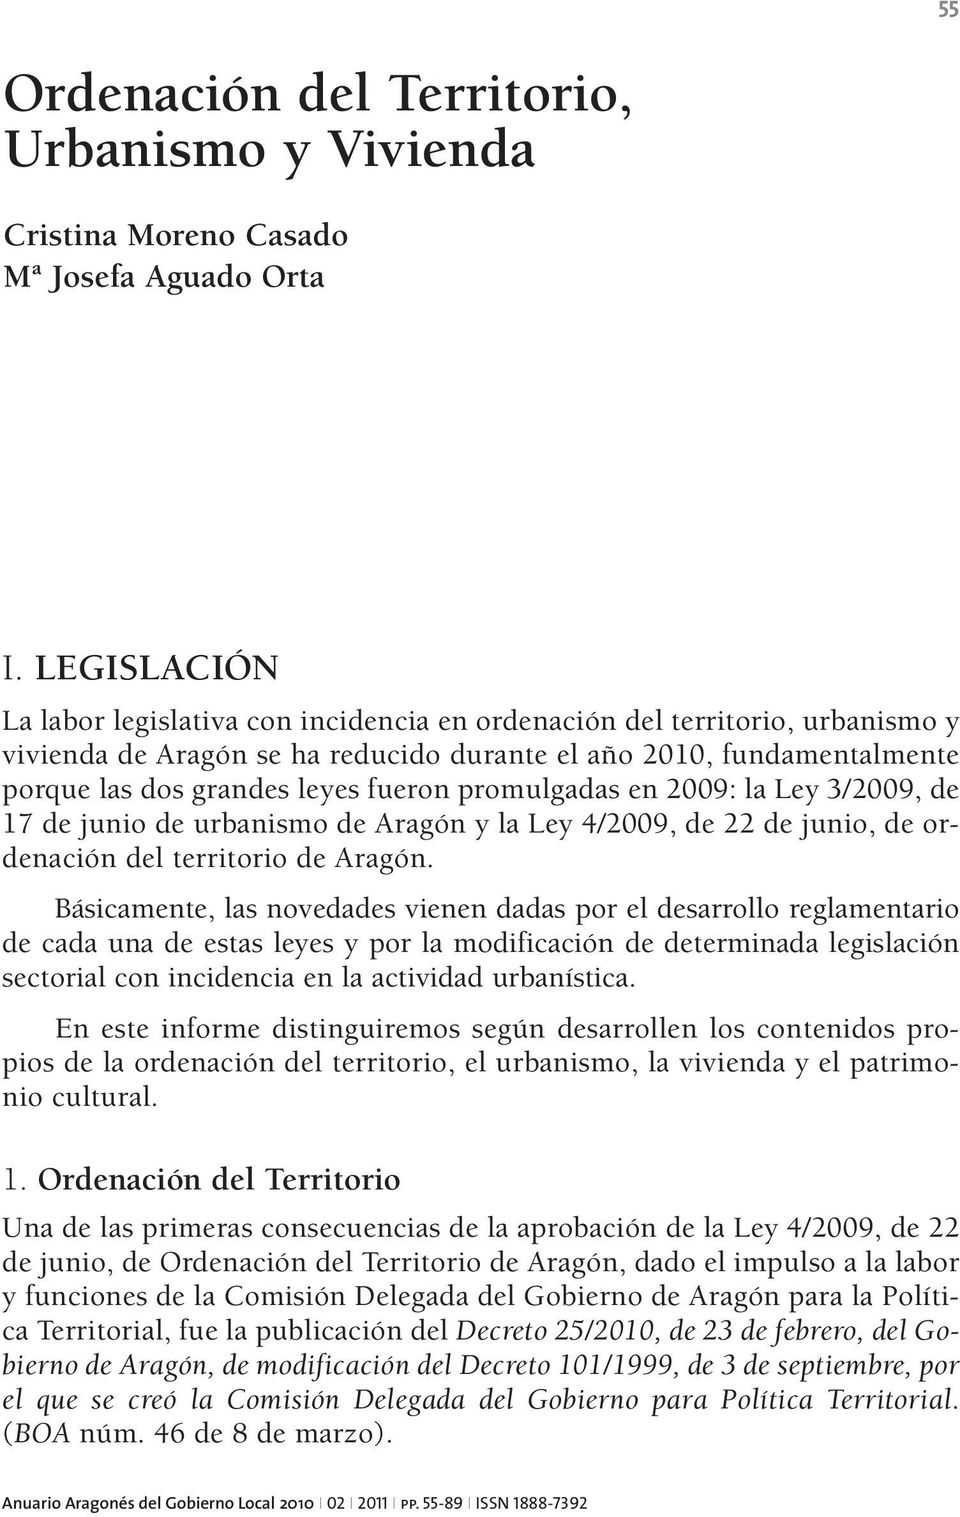 promulgadas en 2009: la Ley 3/2009, de 17 de junio de urbanismo de Aragón y la Ley 4/2009, de 22 de junio, de ordenación del territorio de Aragón.